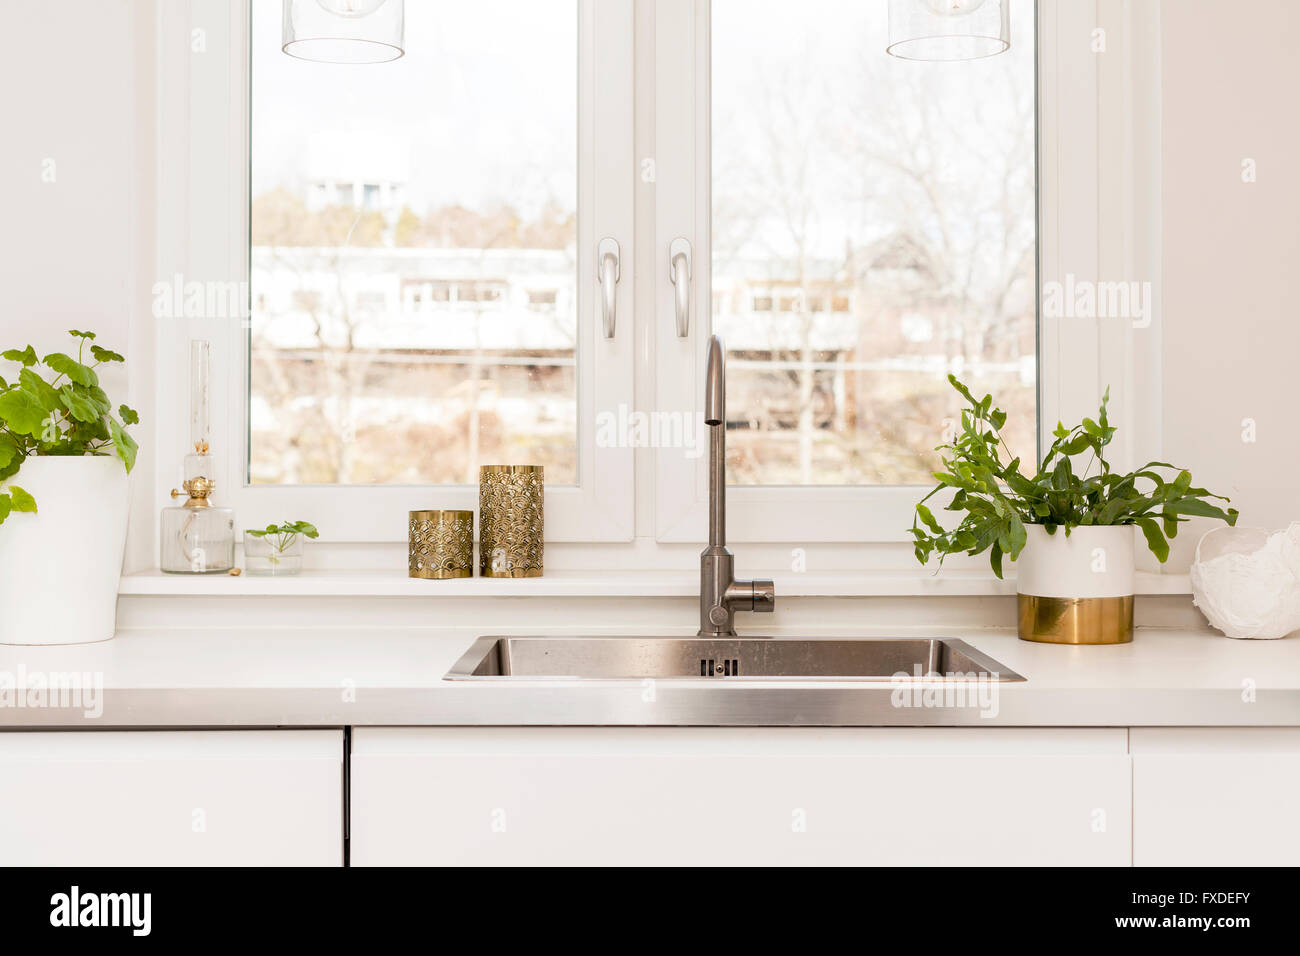 Dettaglio di un lavello da cucina dalla finestra in una cucina Foto Stock